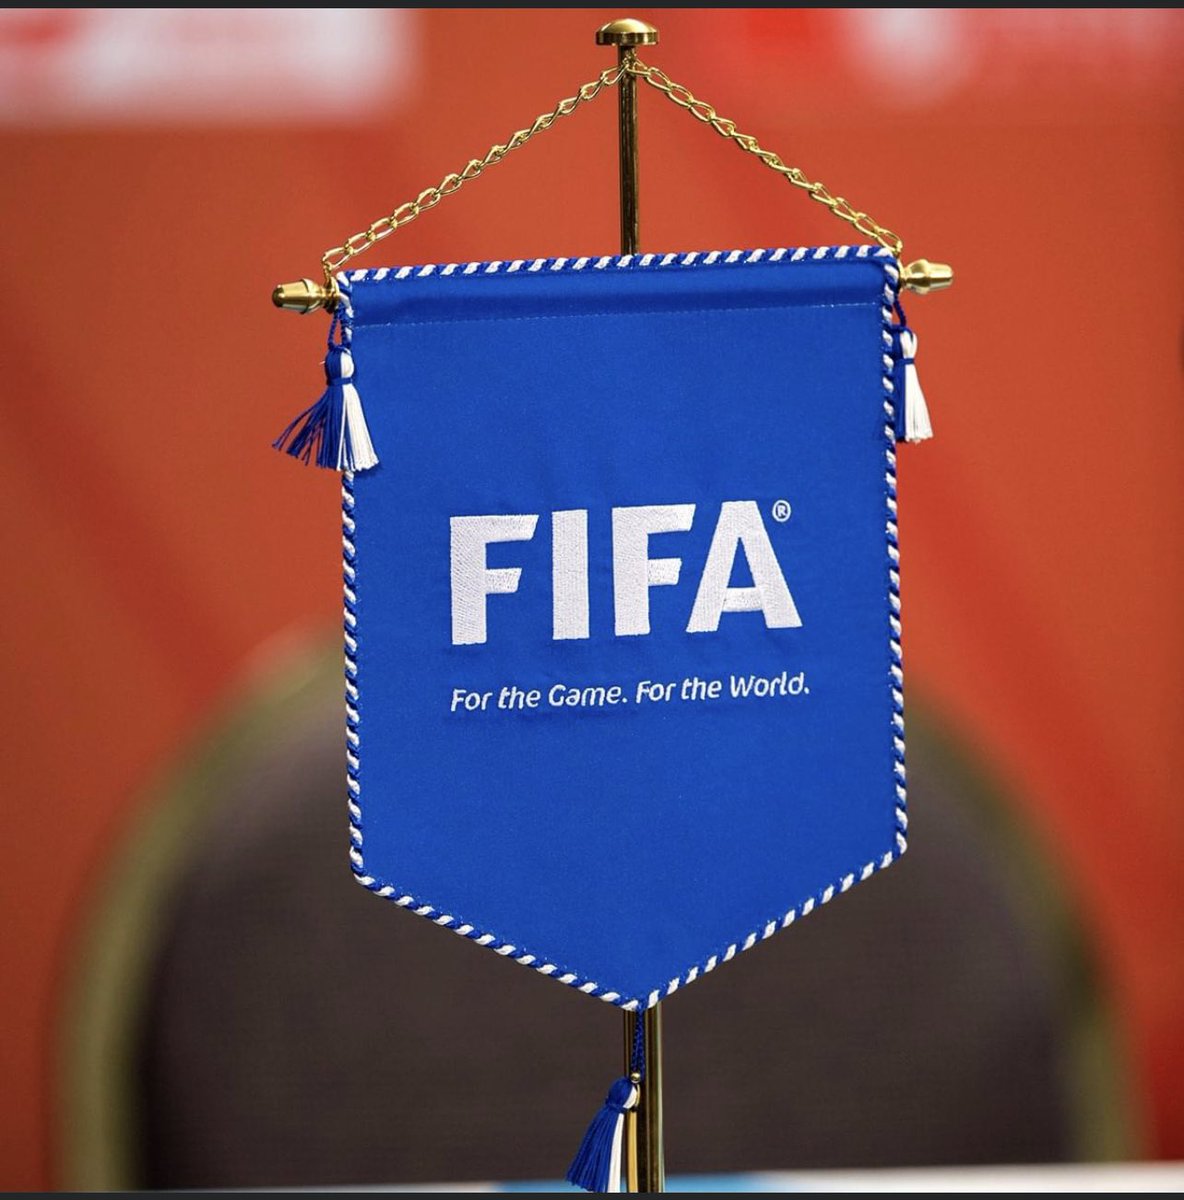 FIFA vill Ã¤ndra reglerna inom fotbollen sÃ¥ jag undrar vad twitter tycker?#twittboll #fotboll #fifa 